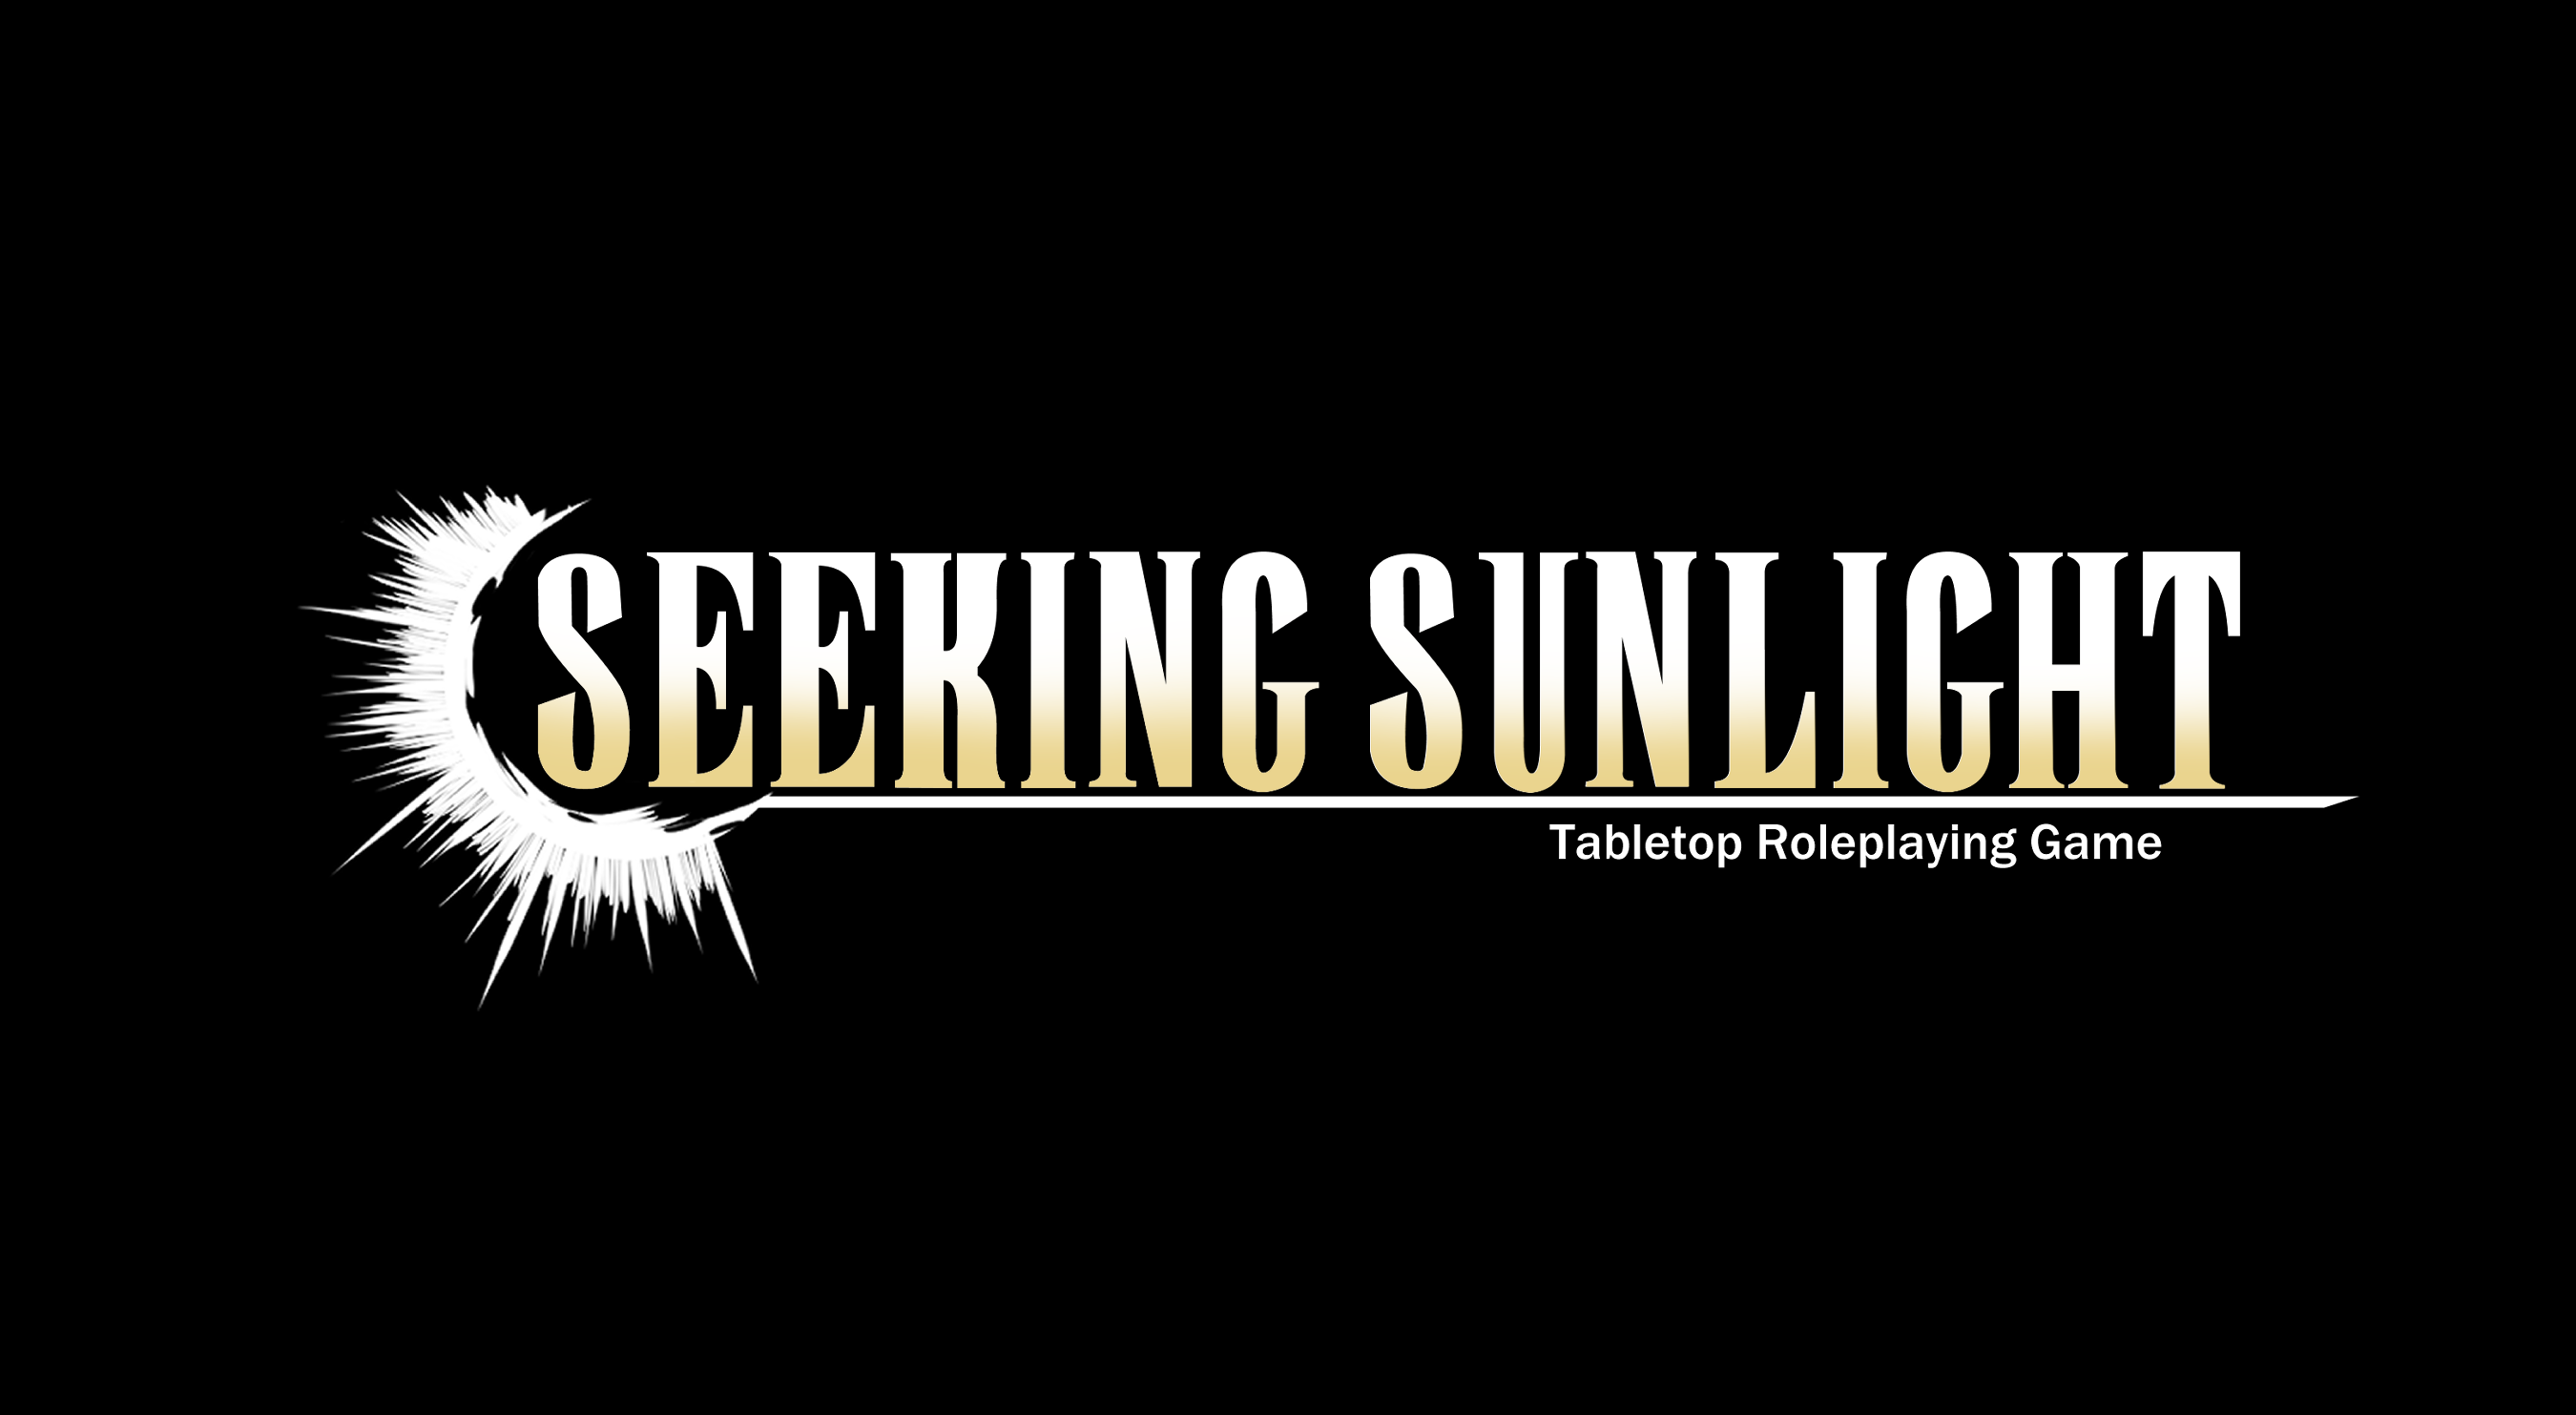 Seeking Sunlight